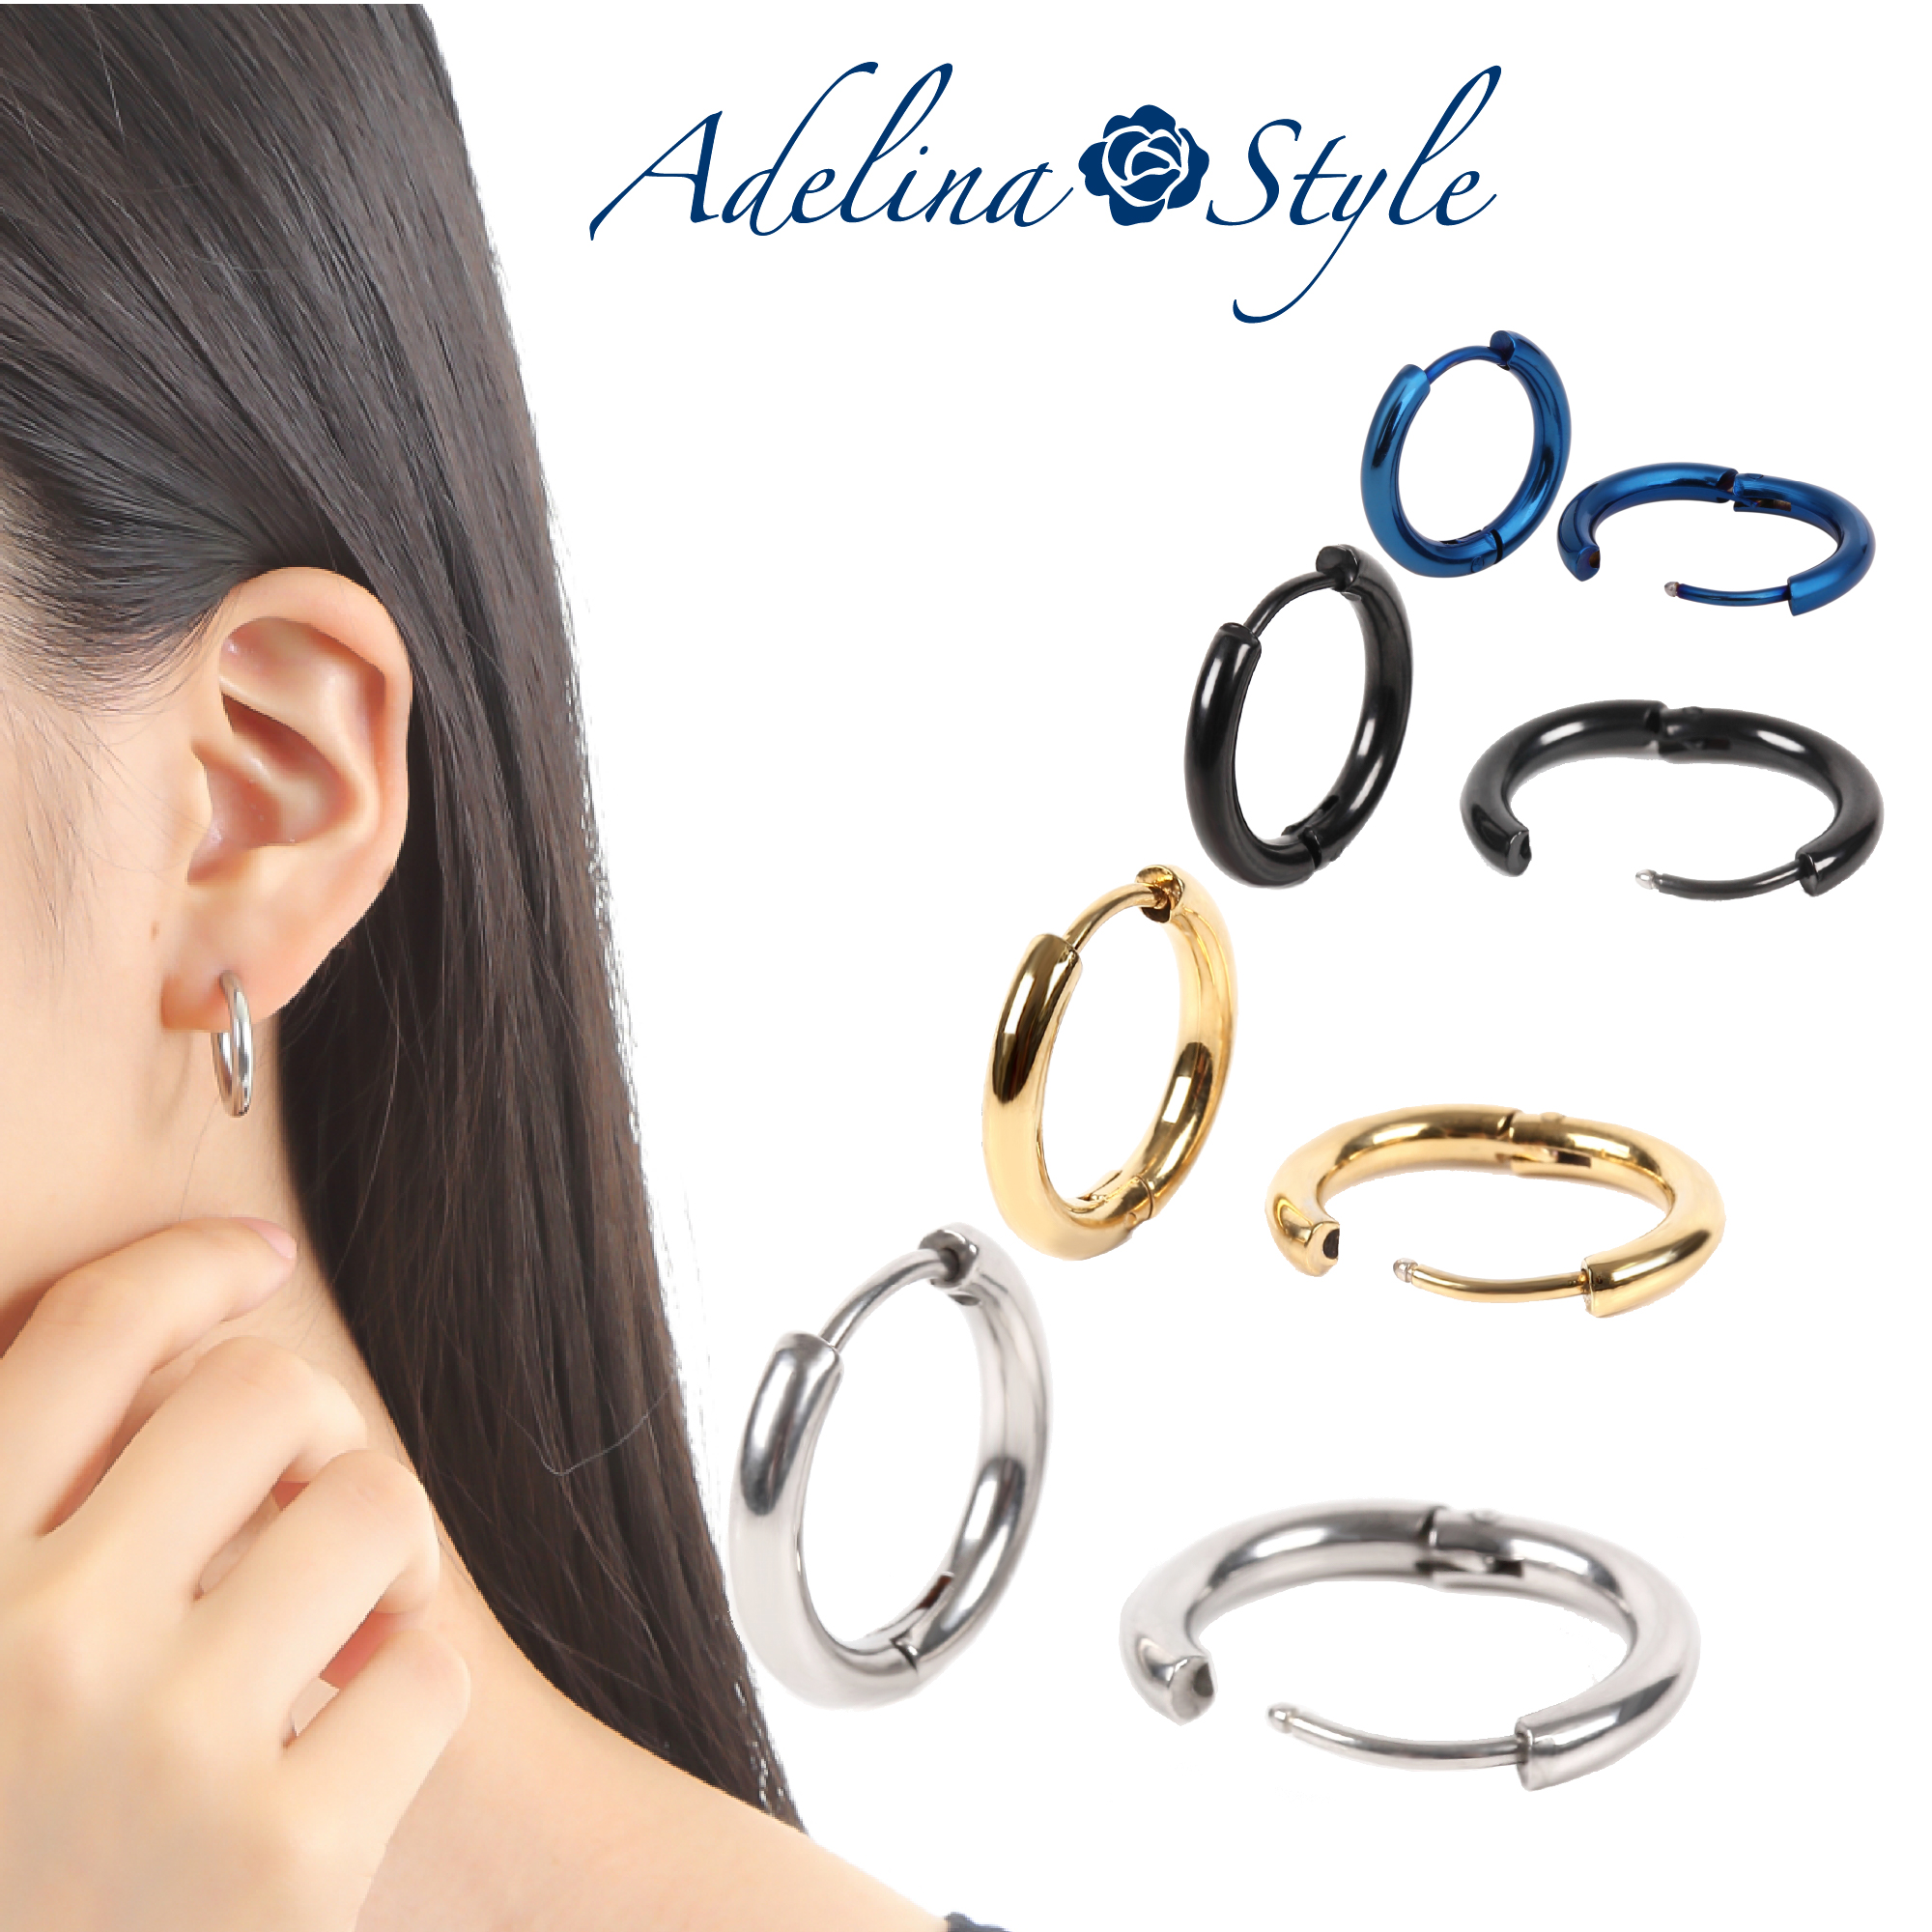 Adelina Style(アデリナスタイル) フープ ピアス 幅2.5mm 男女兼用 両耳用 リングピアス サージカルステンレス アレルギーフリー  ポーチクロス付 人気ぺアセット | ようこそ！Adelina style アデリナスタイルへ